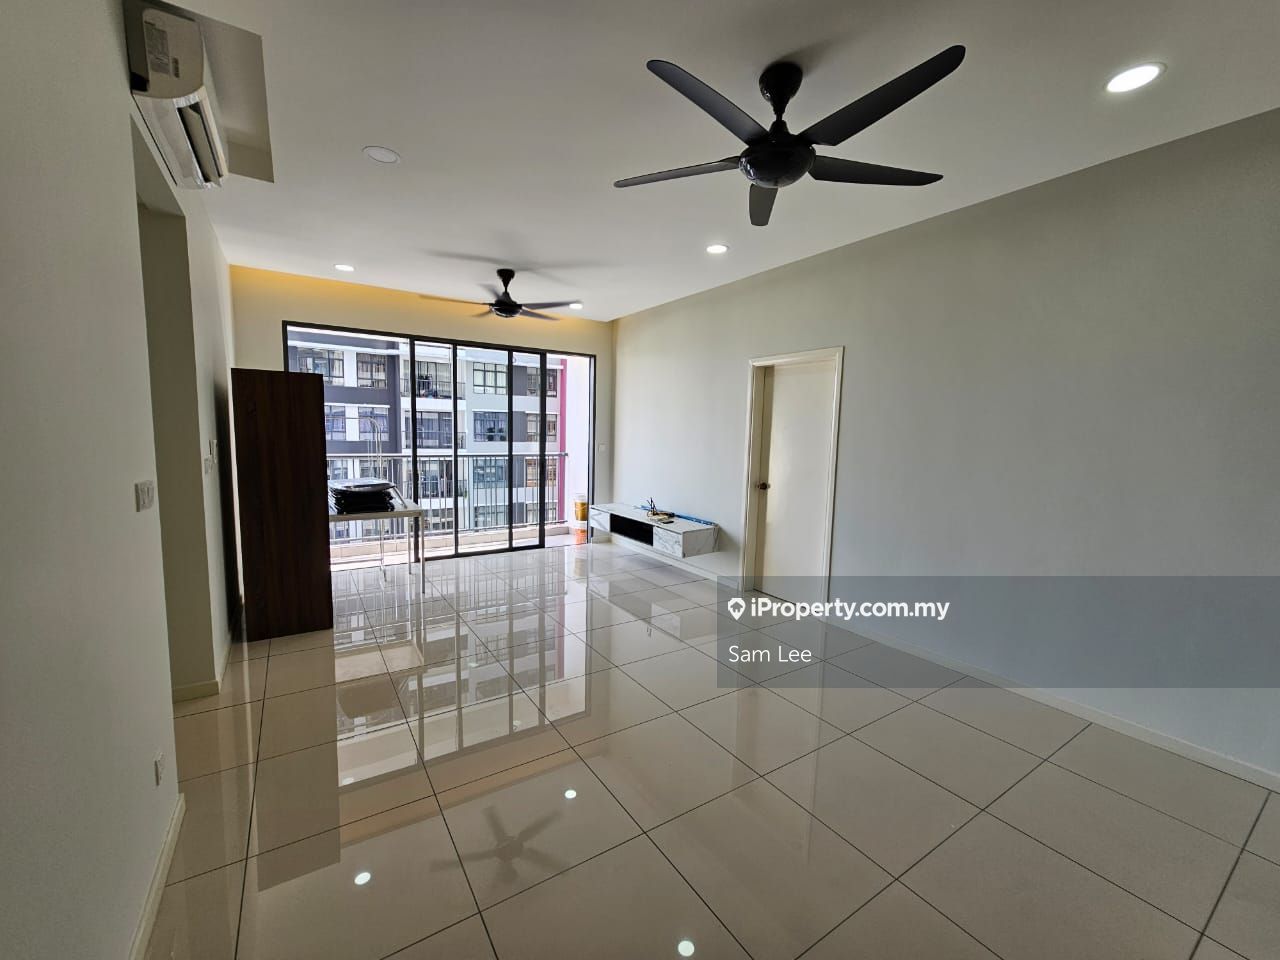 Casa Green Corner lot Condominium 3 bedrooms for sale in Bukit Jalil ...